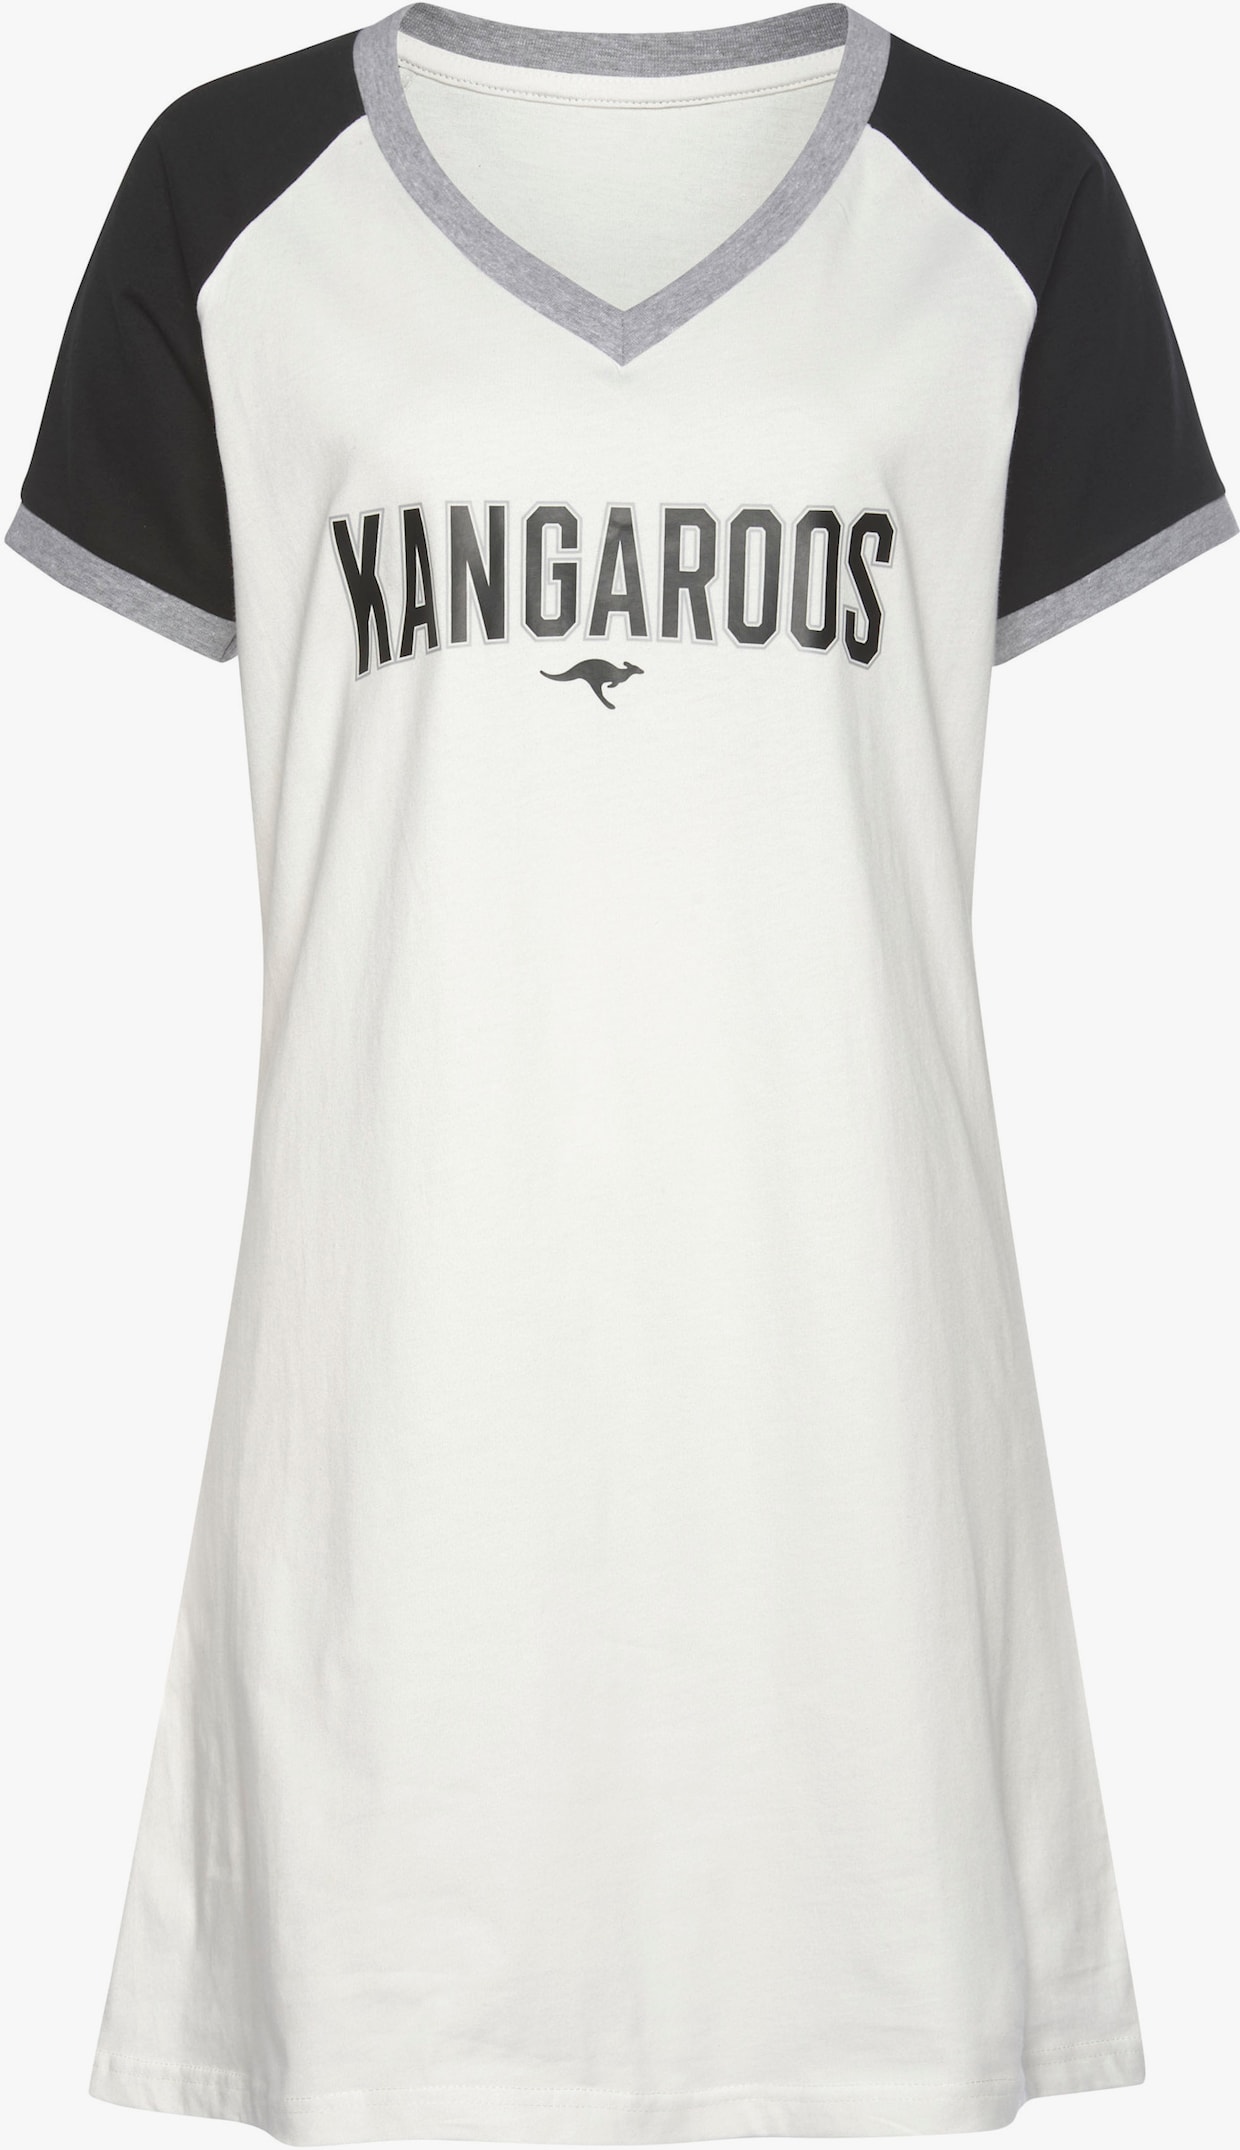 KangaROOS Bigshirt - schwarz-weiß